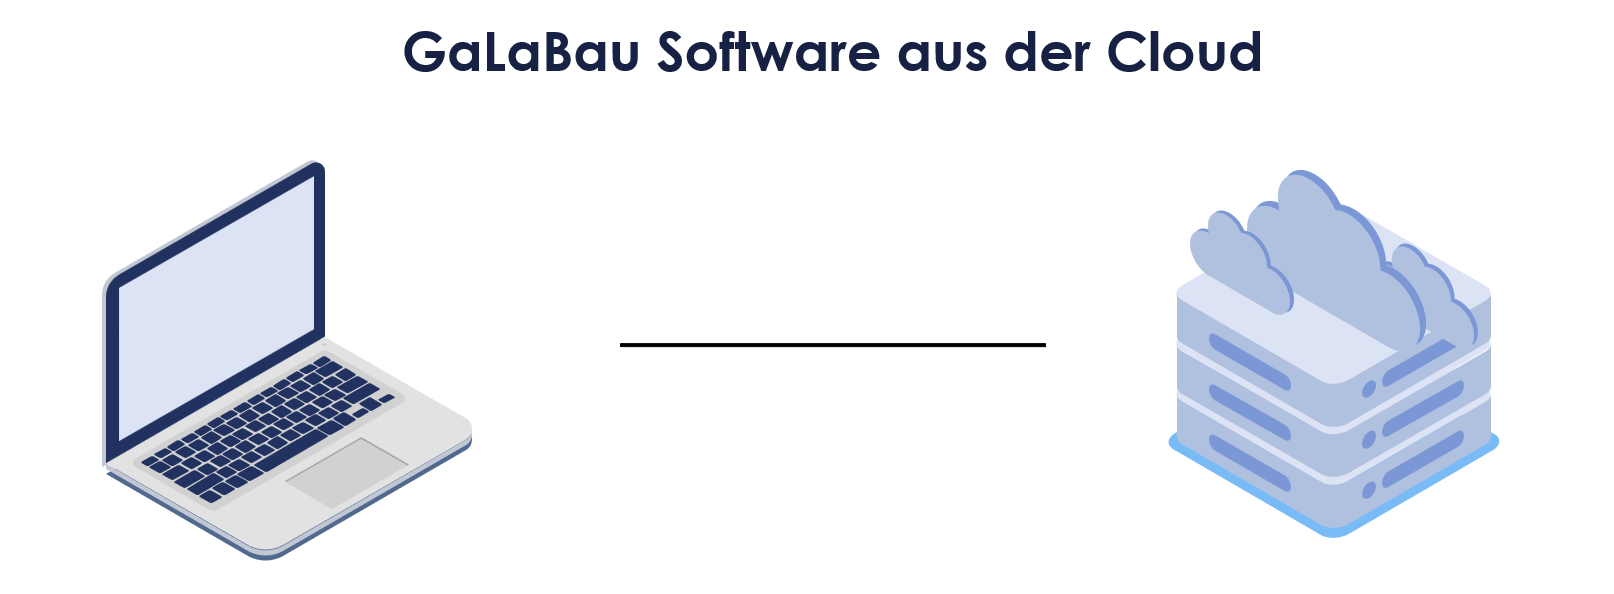 GalaBau Software aus der Cloud - Beitragsbild